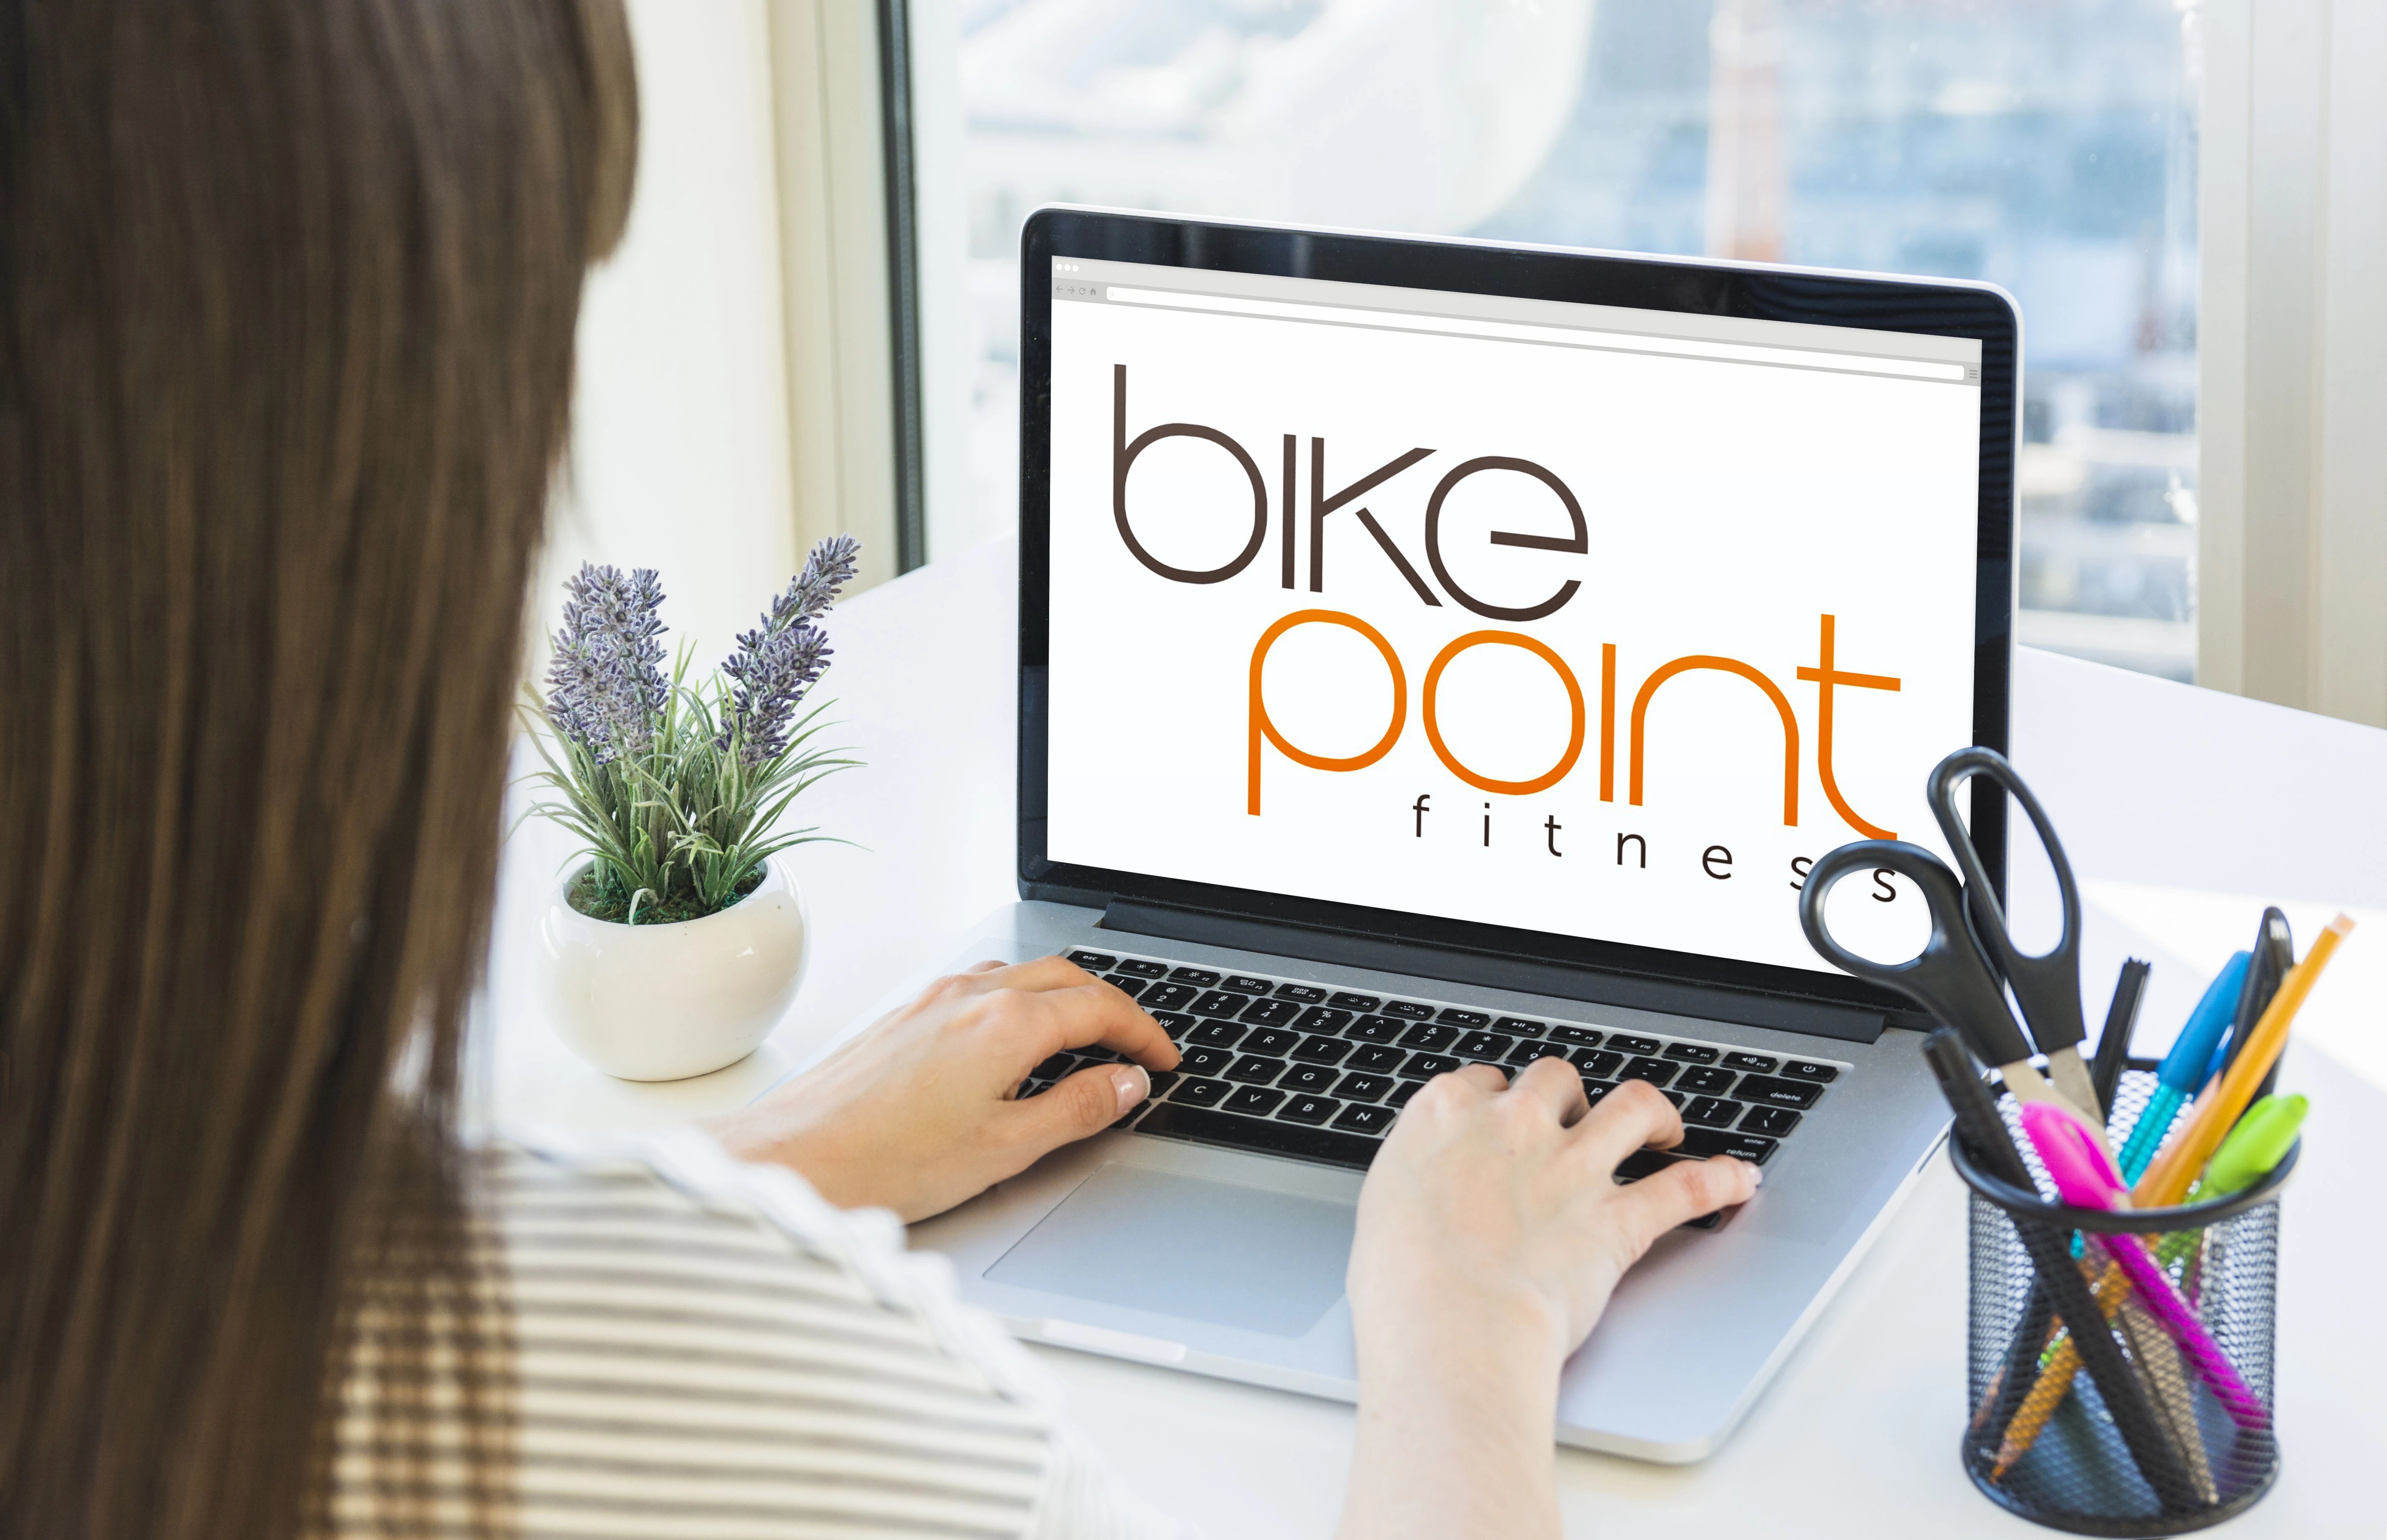 Mujer tecleando en laptop y mirando logo Bike Point